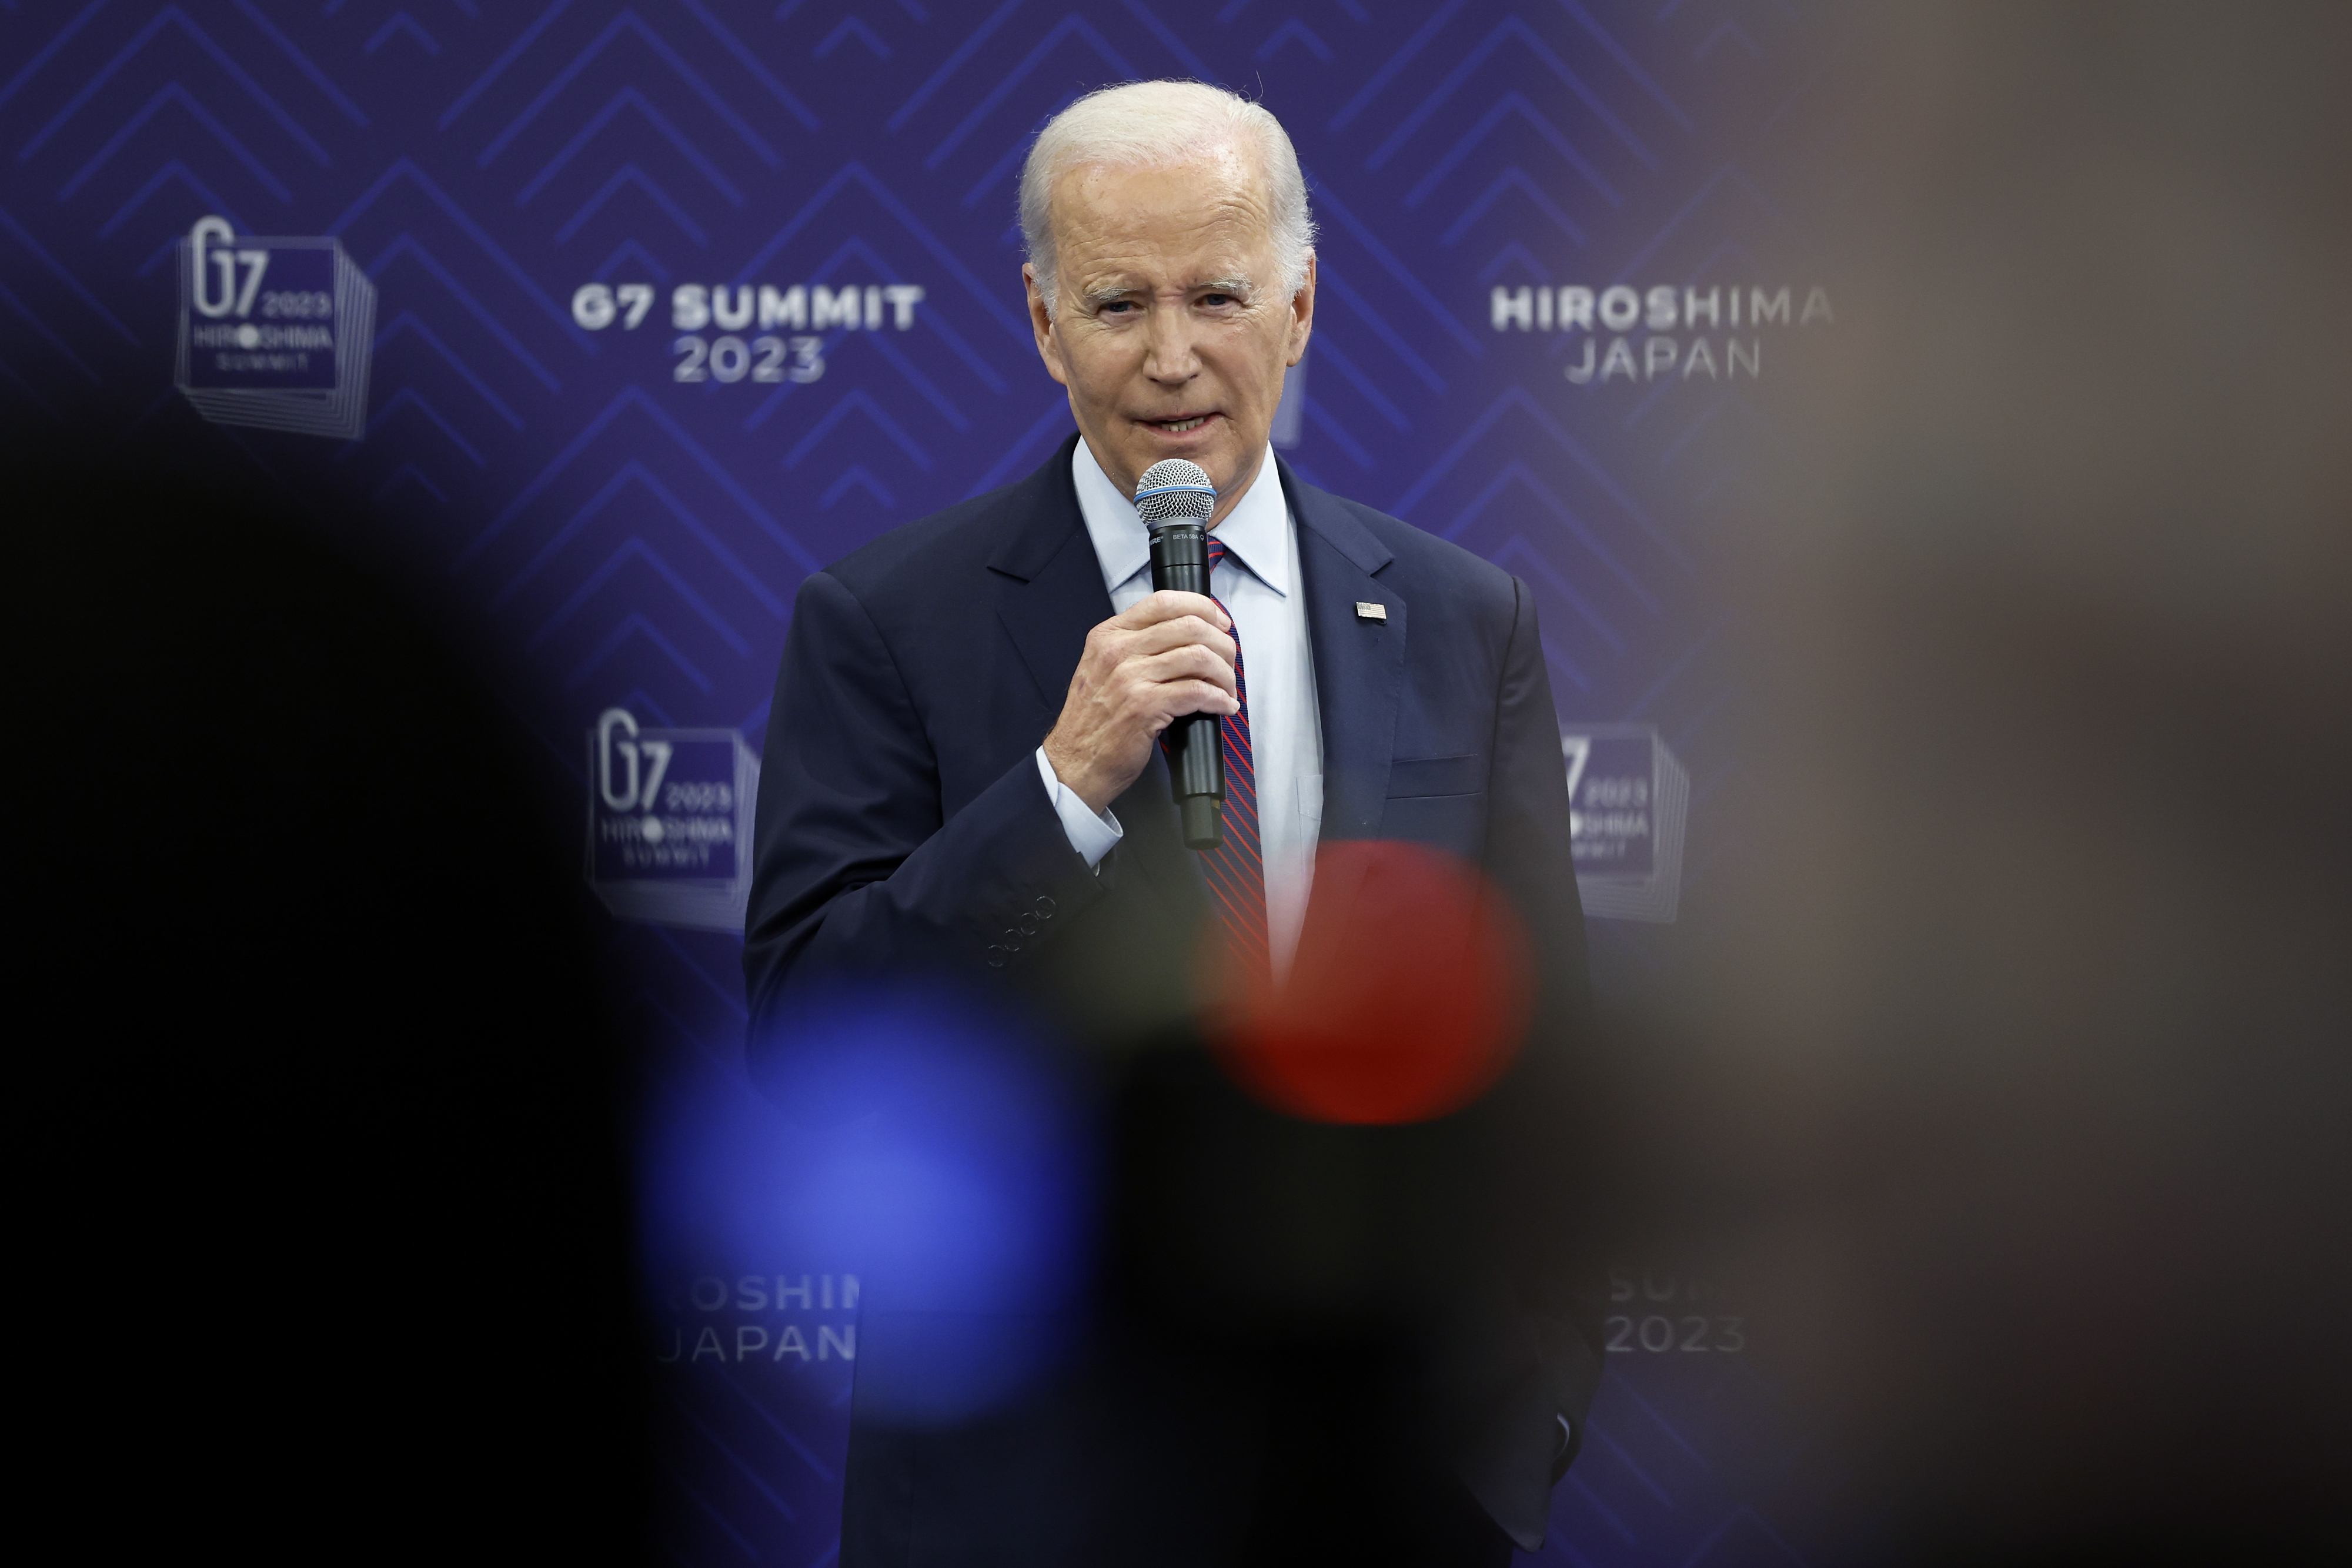 Biden culmina el G7 con polémica y revela que está considerando levantar sanciones al ministro de Defensa chino